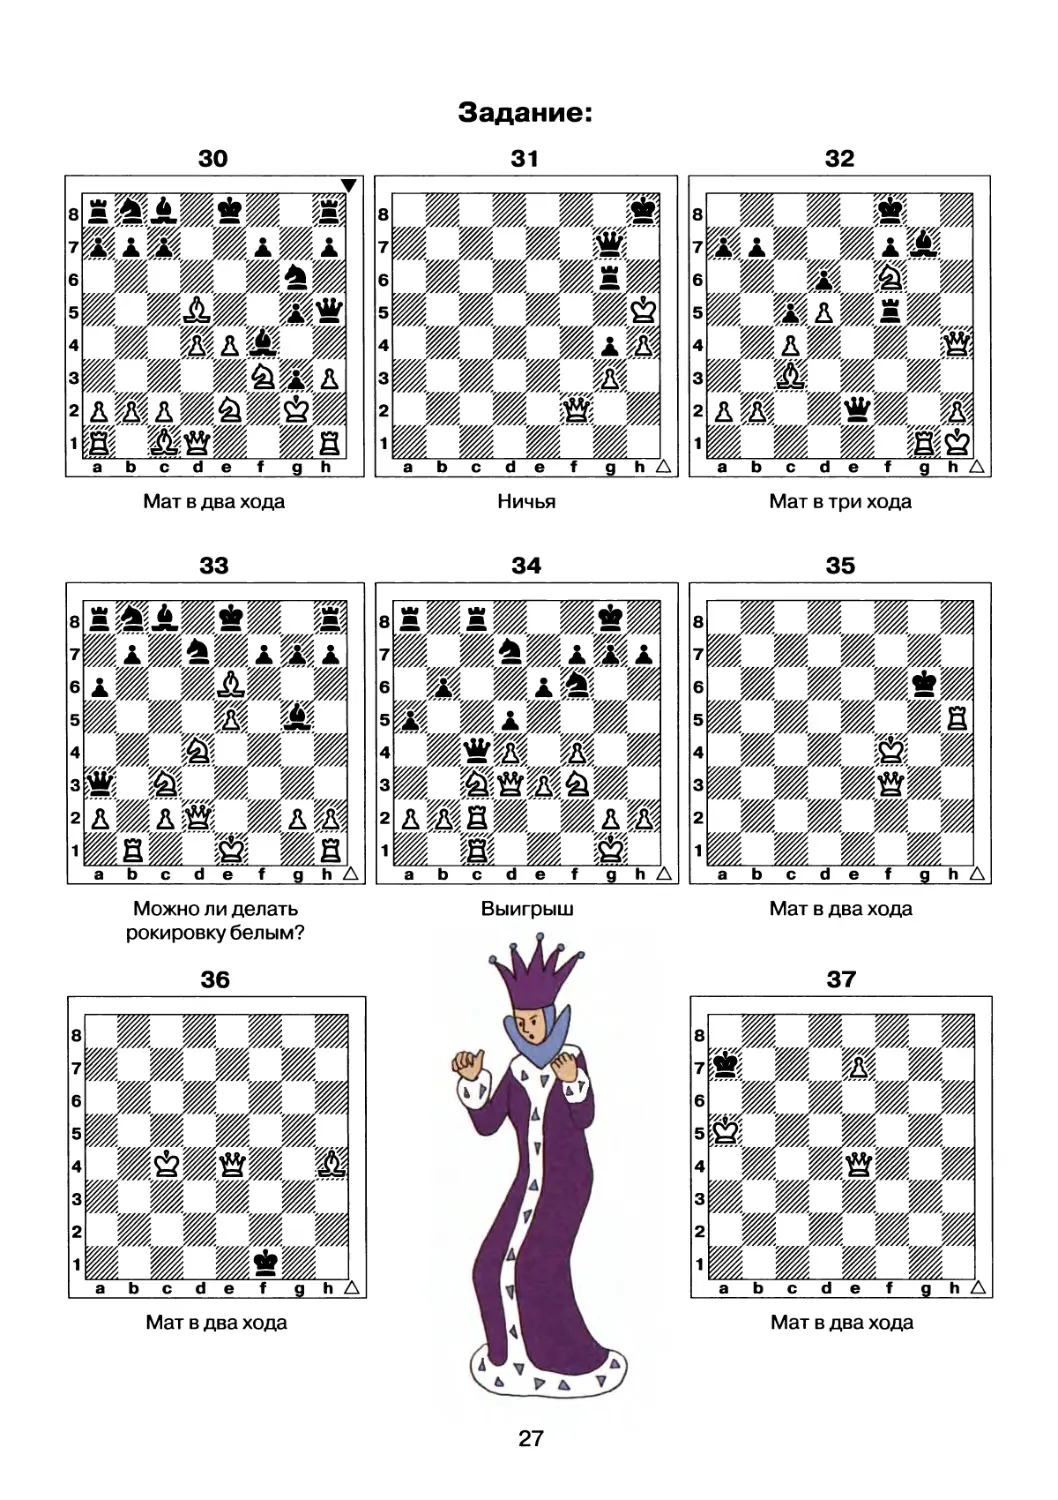 Задачи по шахматам для начинающих детей